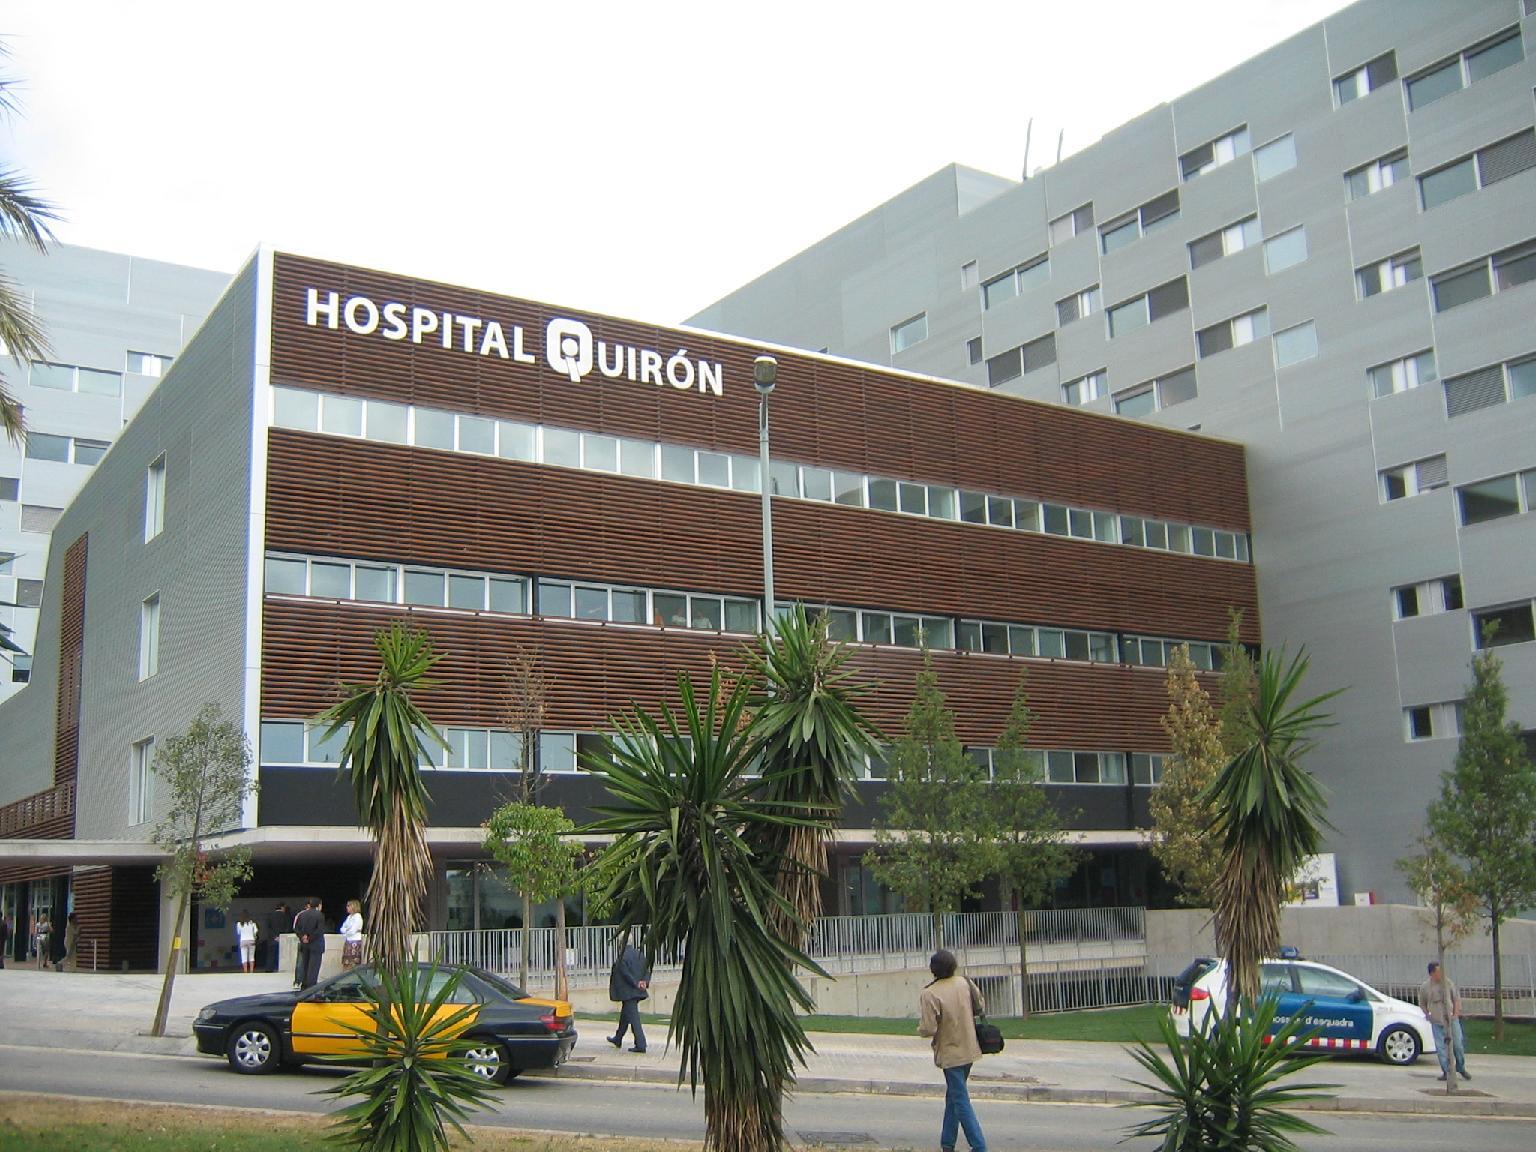 La inmobiliaria del Banco Sabadell pone en venta algunos de los hospitales Quirón